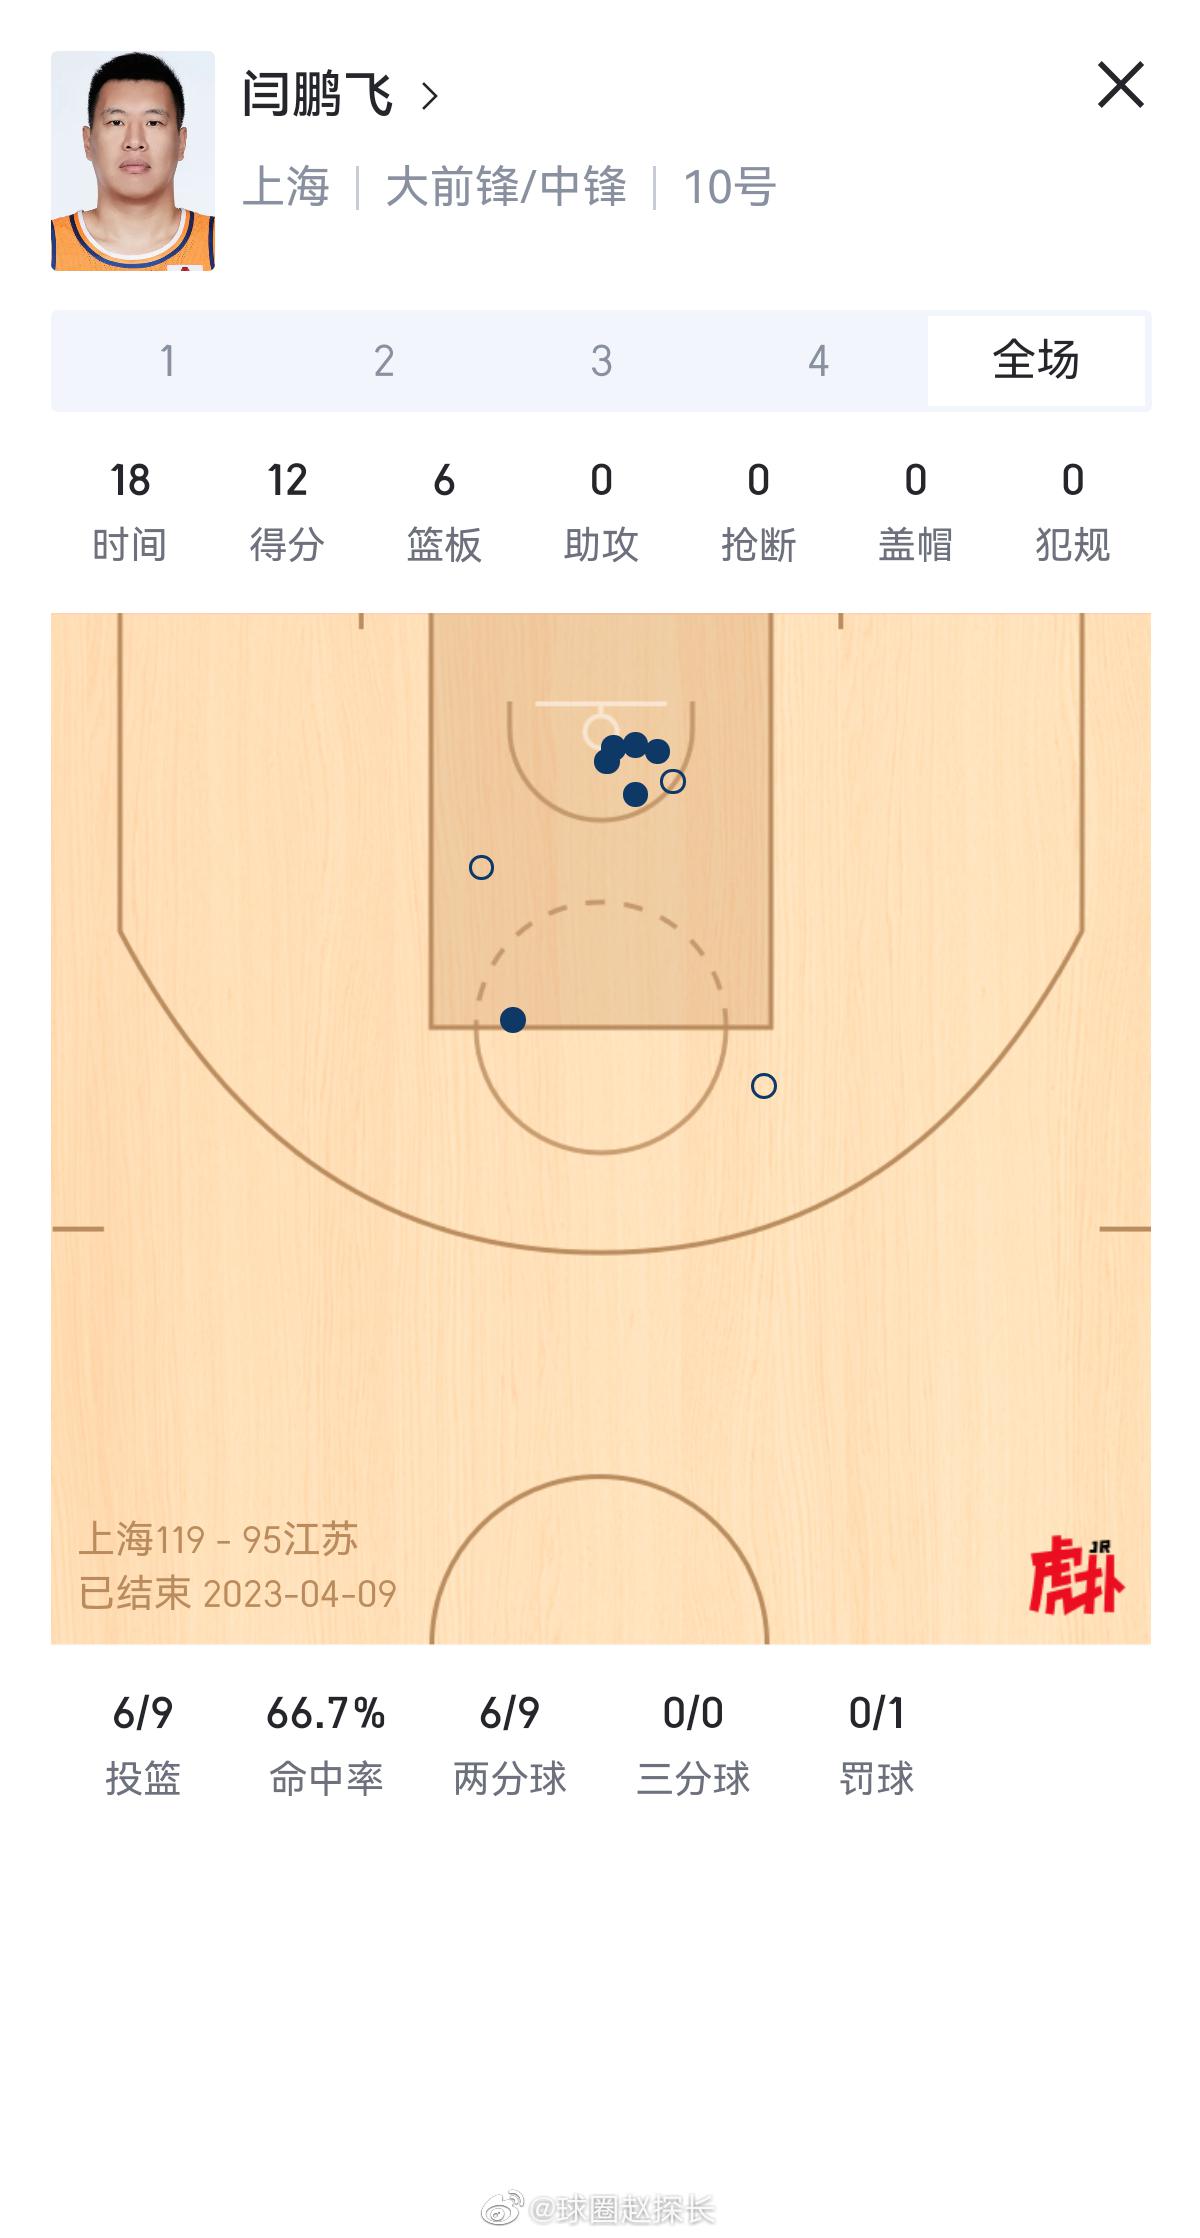 上海119-95大胜江苏，场面上可以说是全面压制的。大王33分12篮板在内线翻江(2)